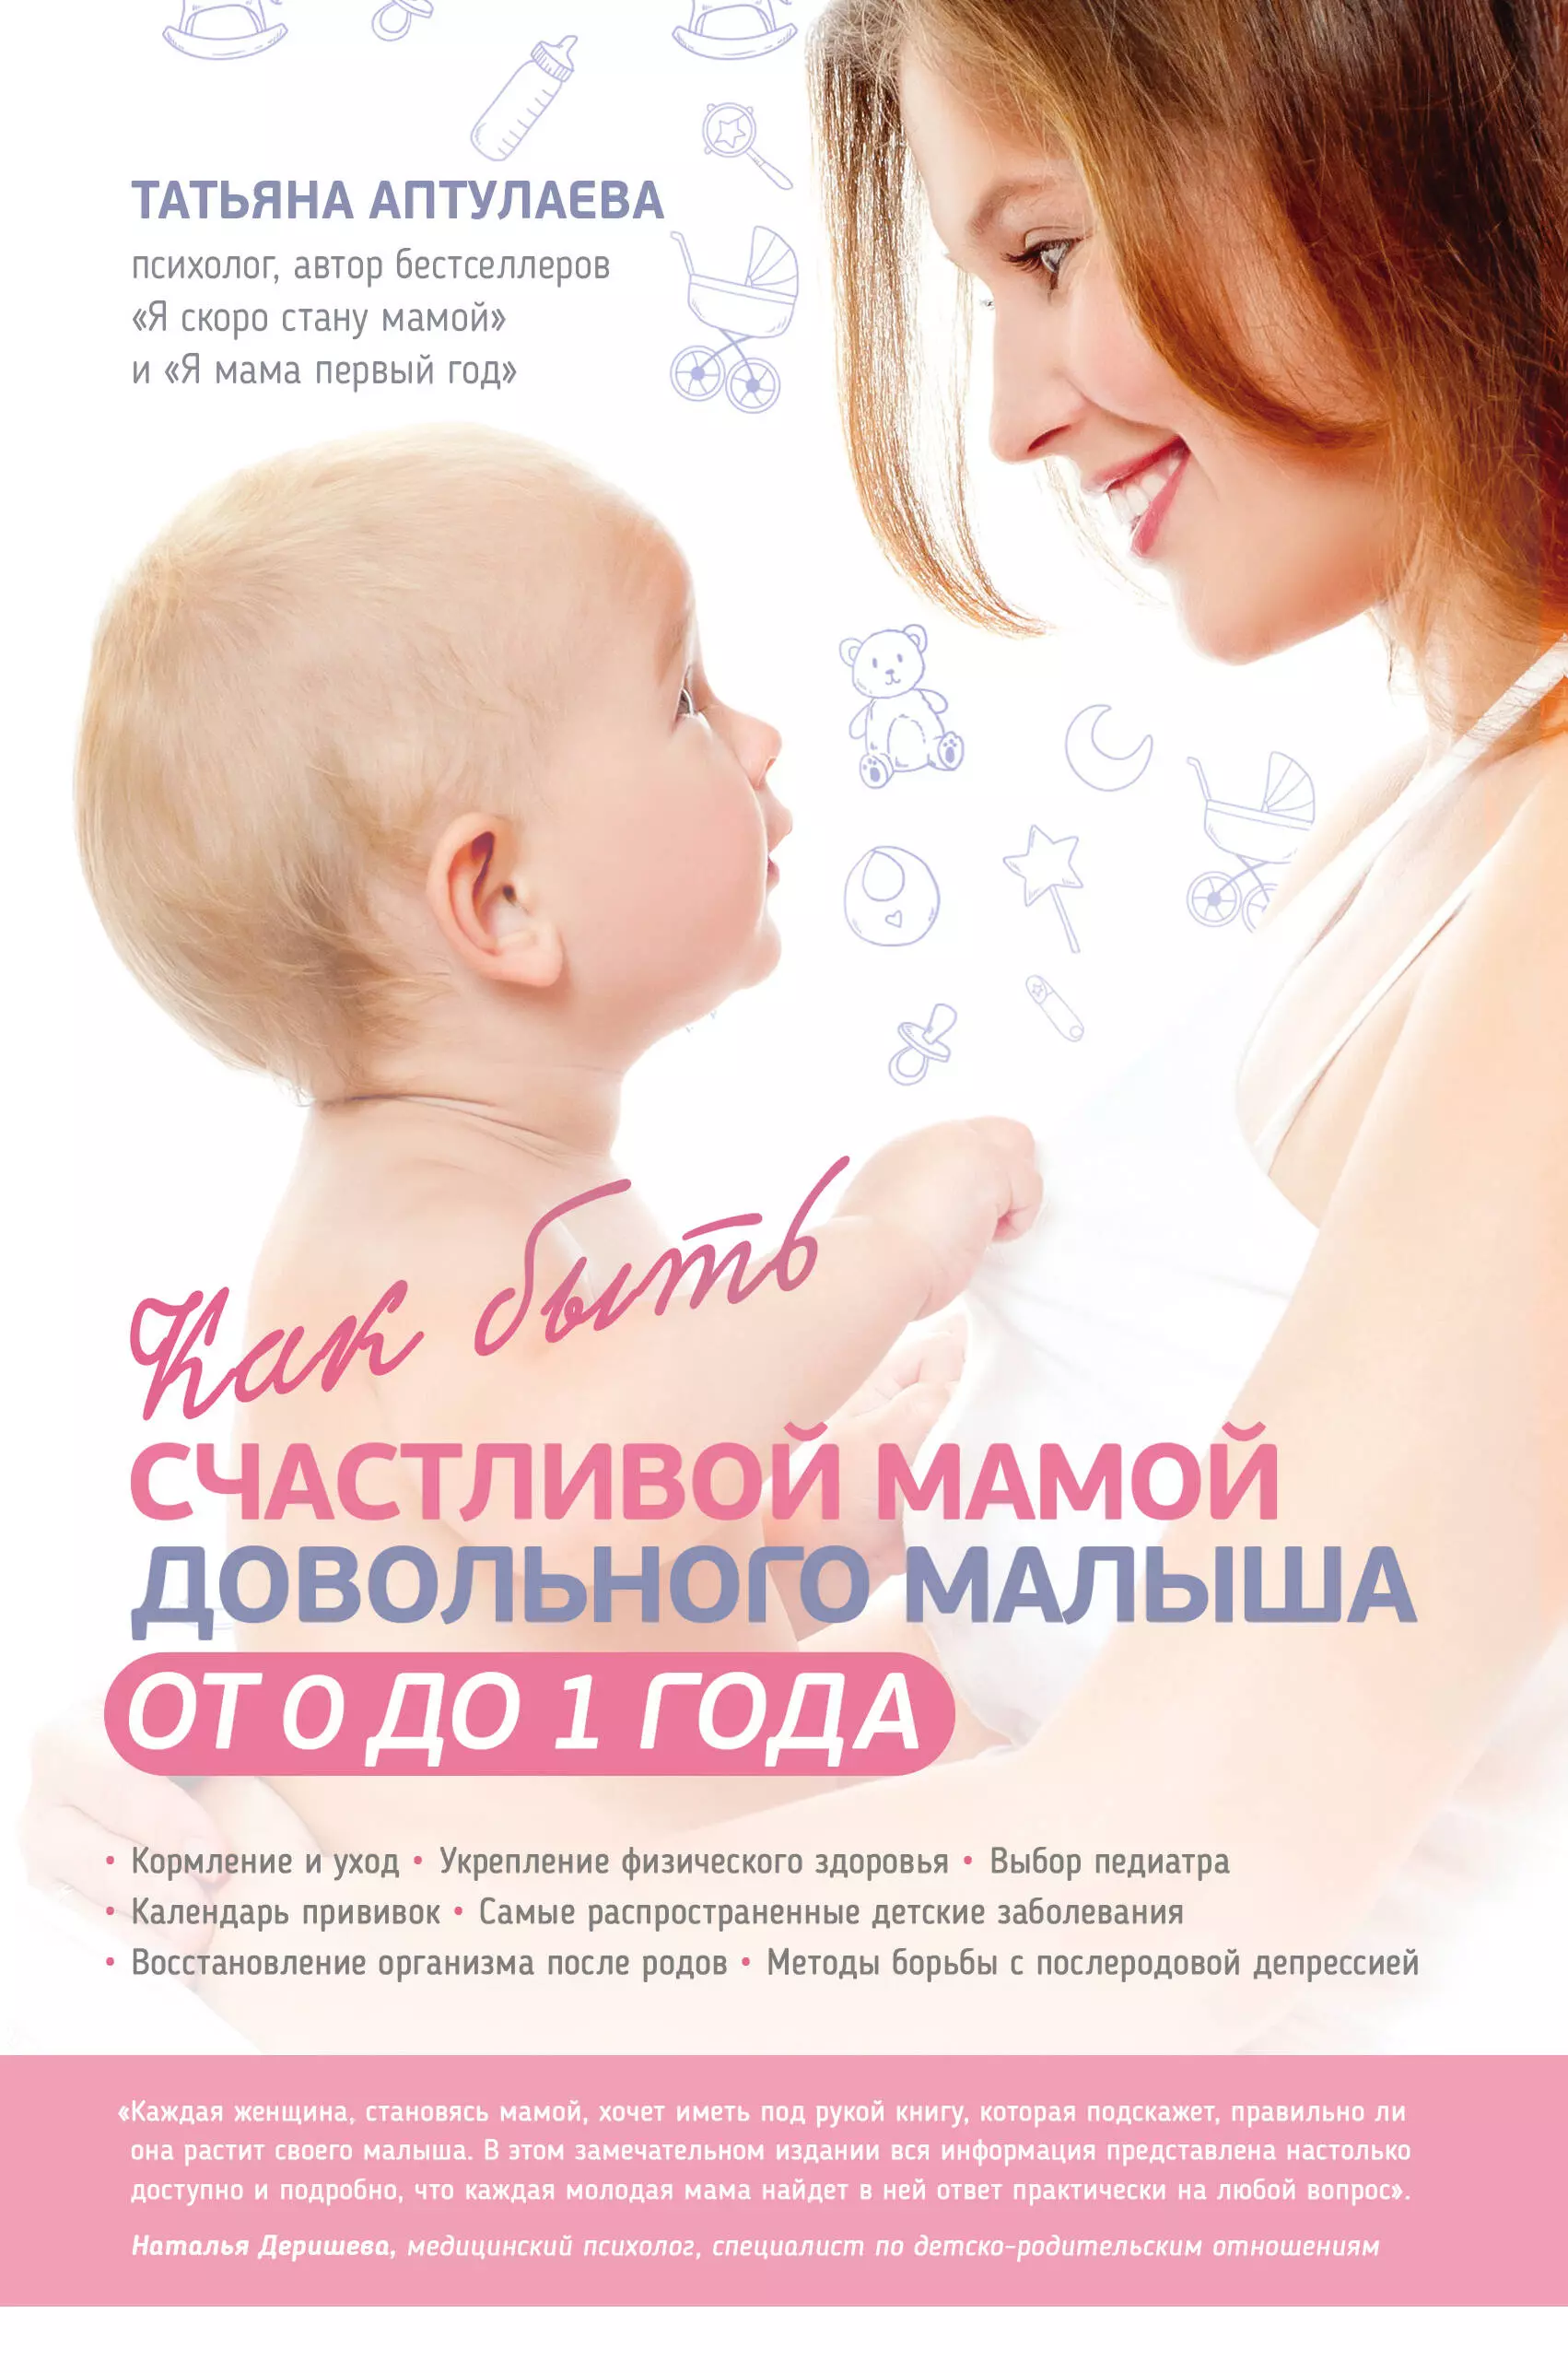 Аптулаева Татьяна Гавриловна - Как быть счастливой мамой довольного малыша от 0 до 1 года